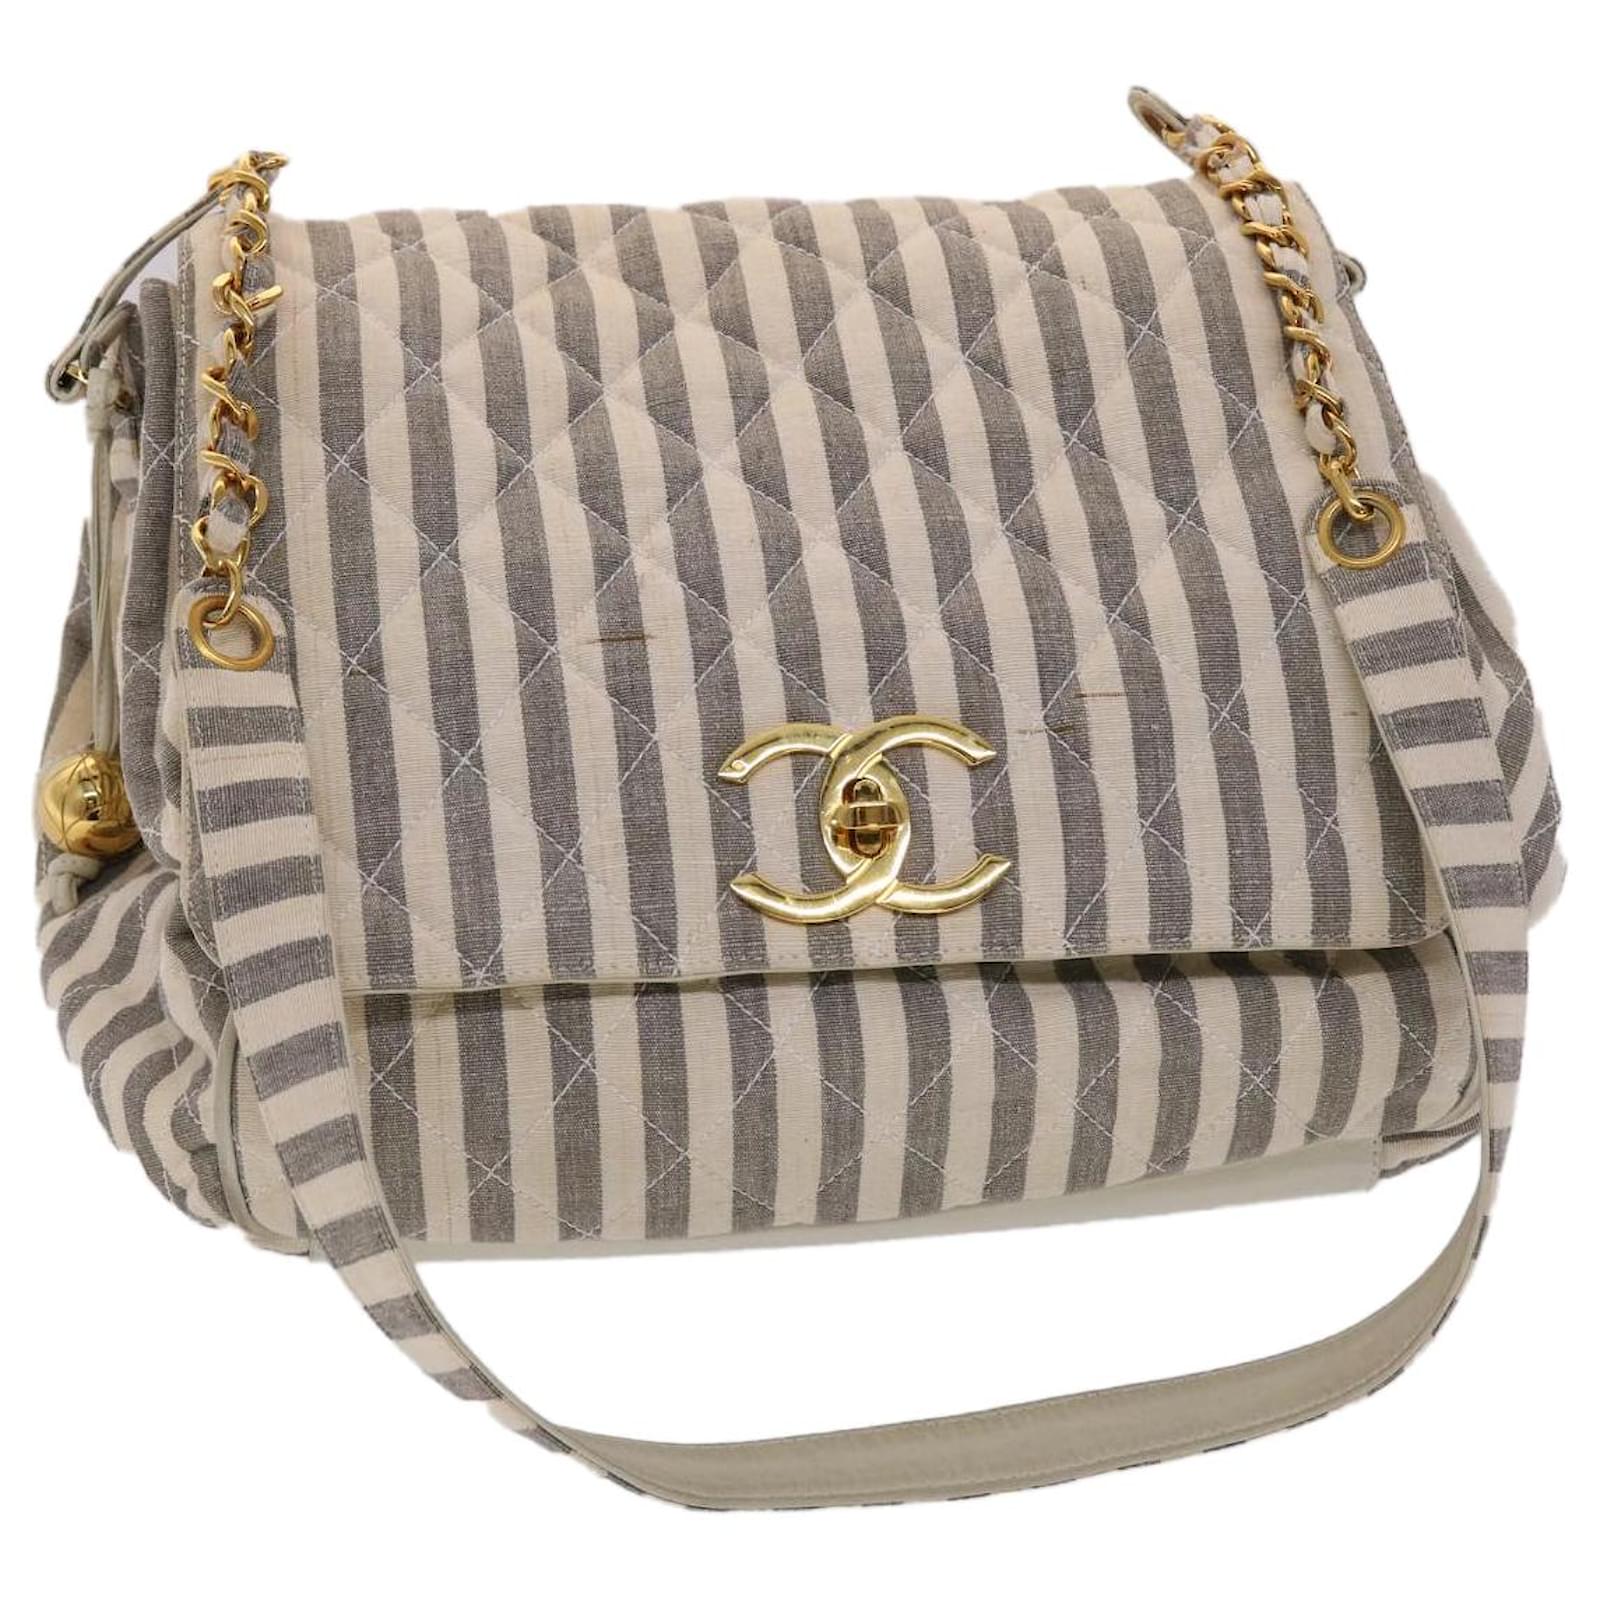 Chanel Metallic Handbag - 225 For Sale on 1stDibs